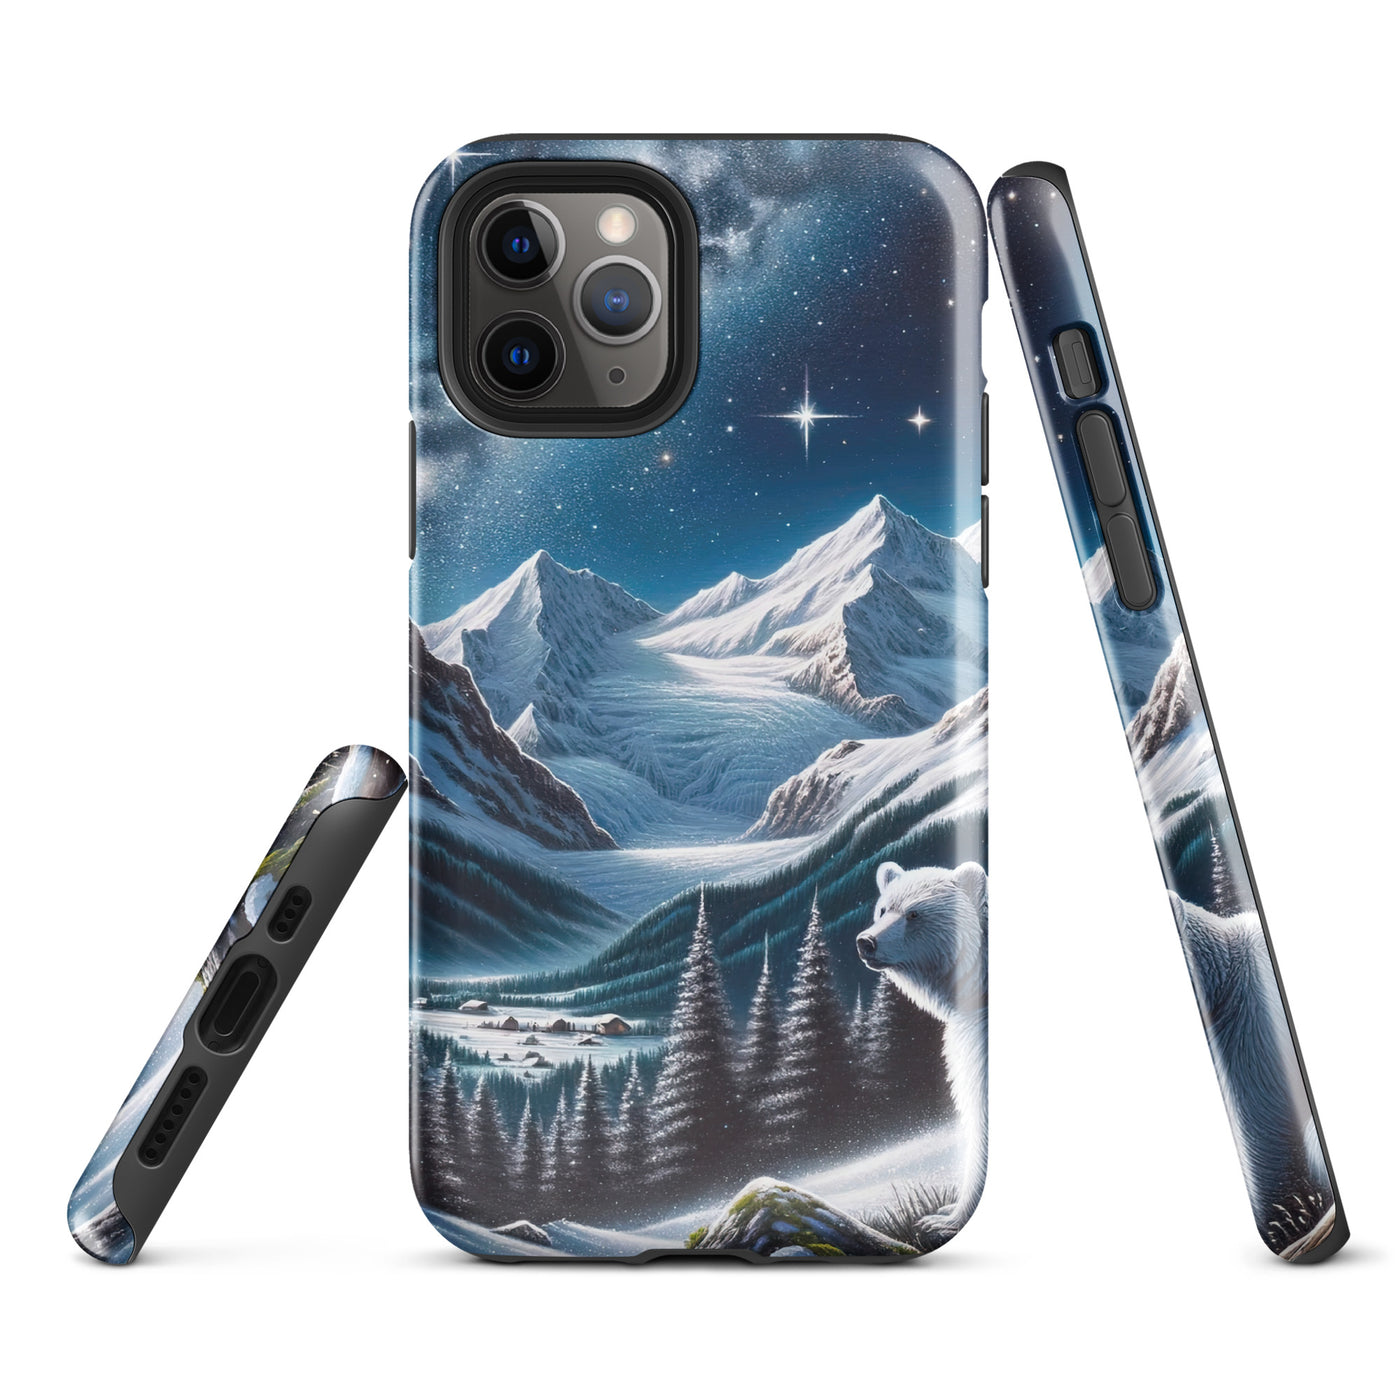 Sternennacht und Eisbär: Acrylgemälde mit Milchstraße, Alpen und schneebedeckte Gipfel - iPhone Schutzhülle (robust) camping xxx yyy zzz iPhone 11 Pro